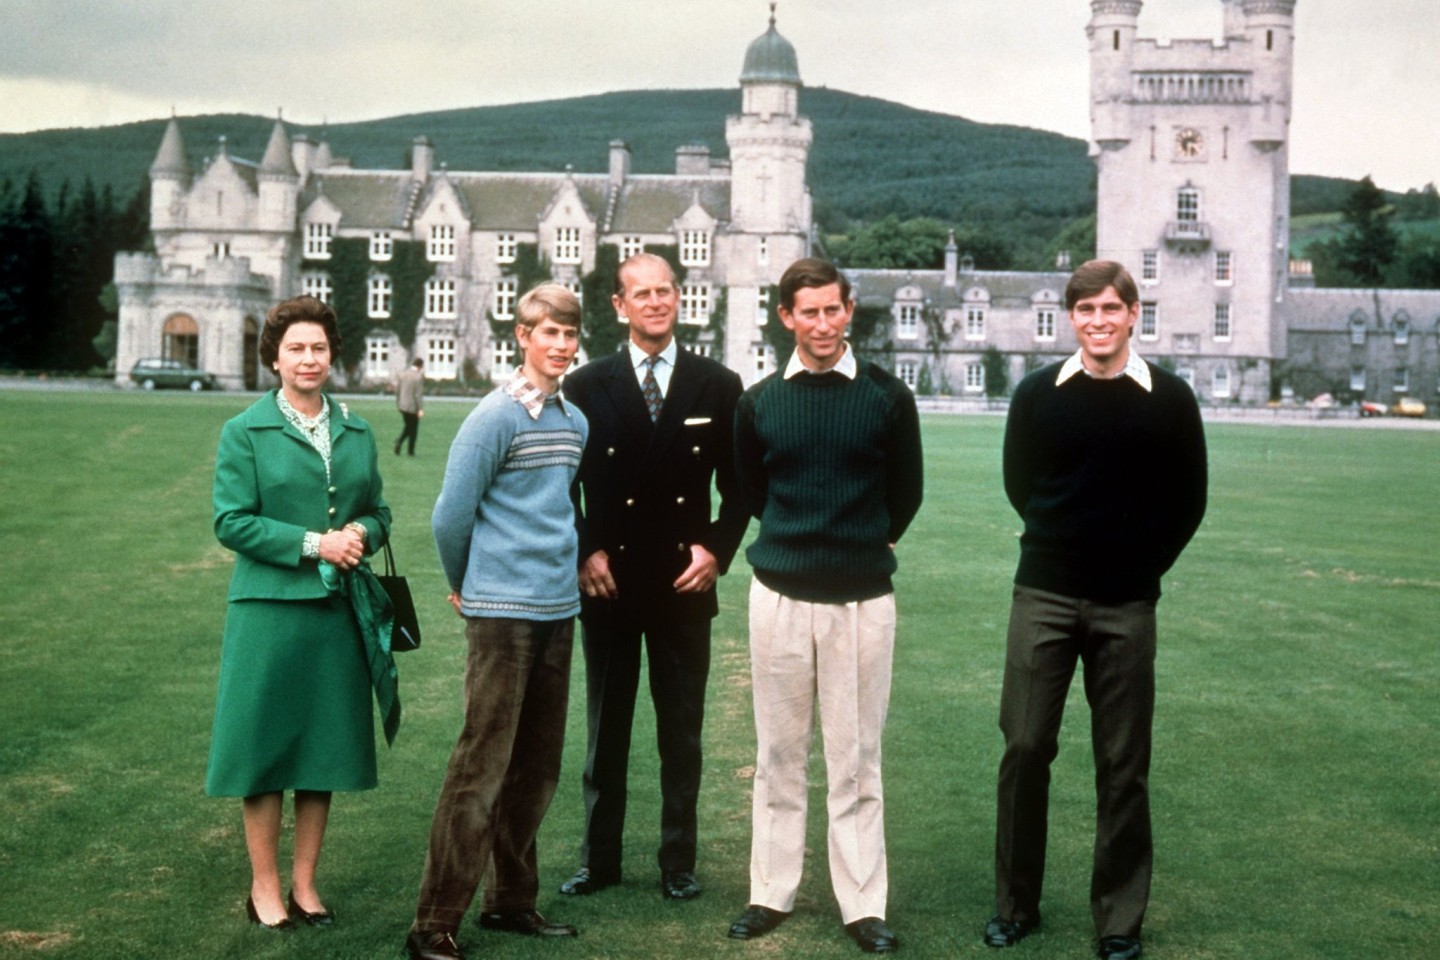 Königin Elizabeth II., Prinz Edward, Prinz Philip, Prinz Charles und Prinz Andrew vor Schloss Balmoral in Schottland im Jahr 1979.